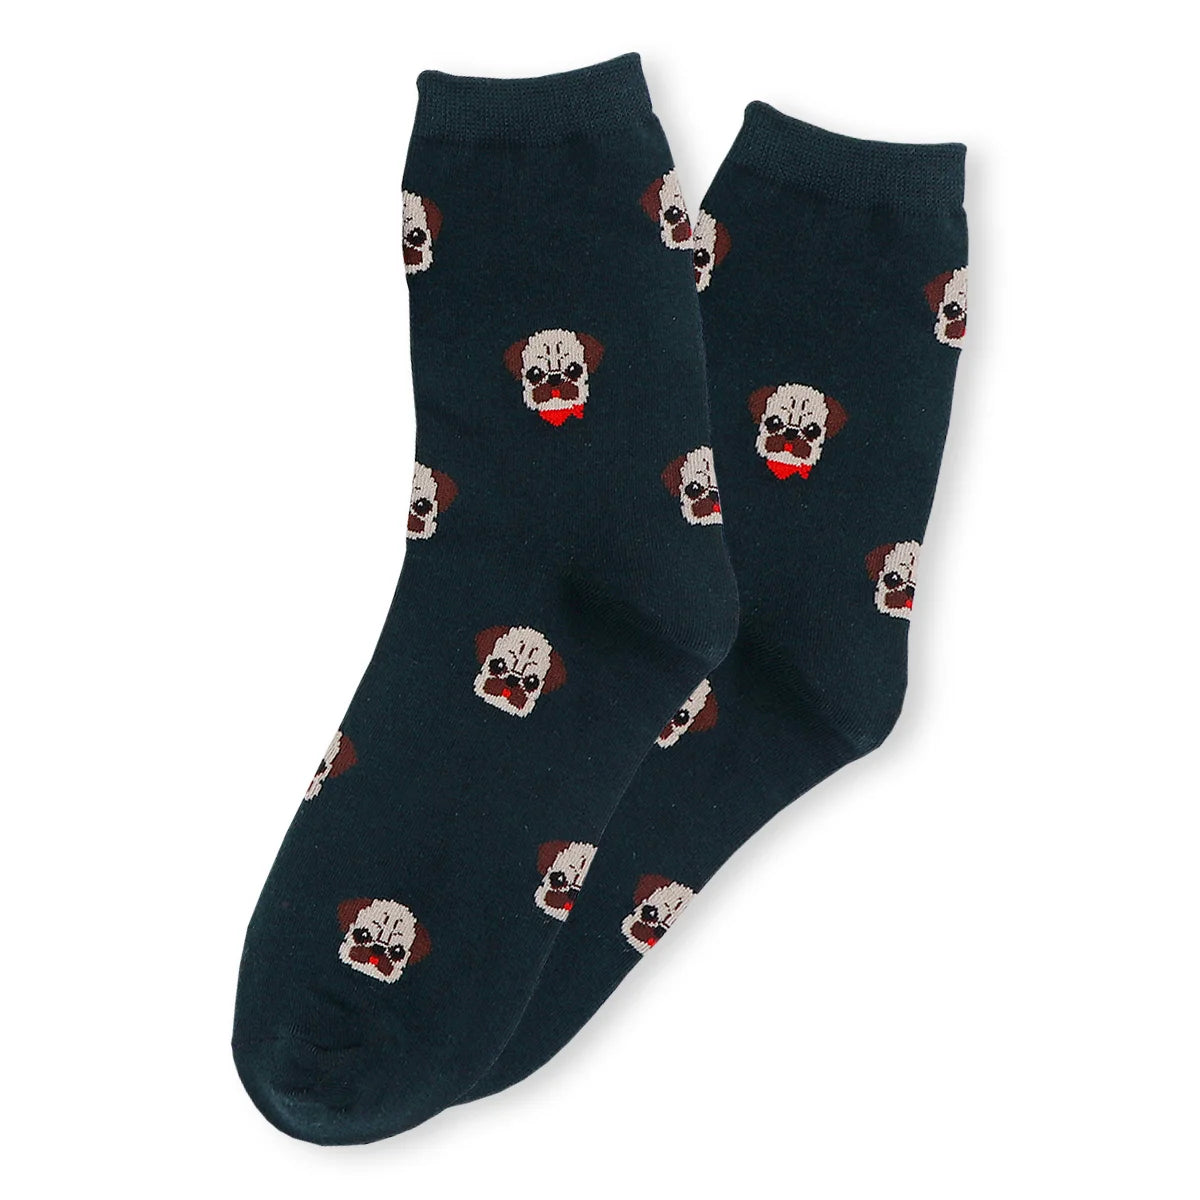 Chaussettes adultes en coton bleu avec des têtes de bulldog dessus | Chaussettes douces et respirantes | Un excellent choix pour les adultes qui aiment les dalmatiens |